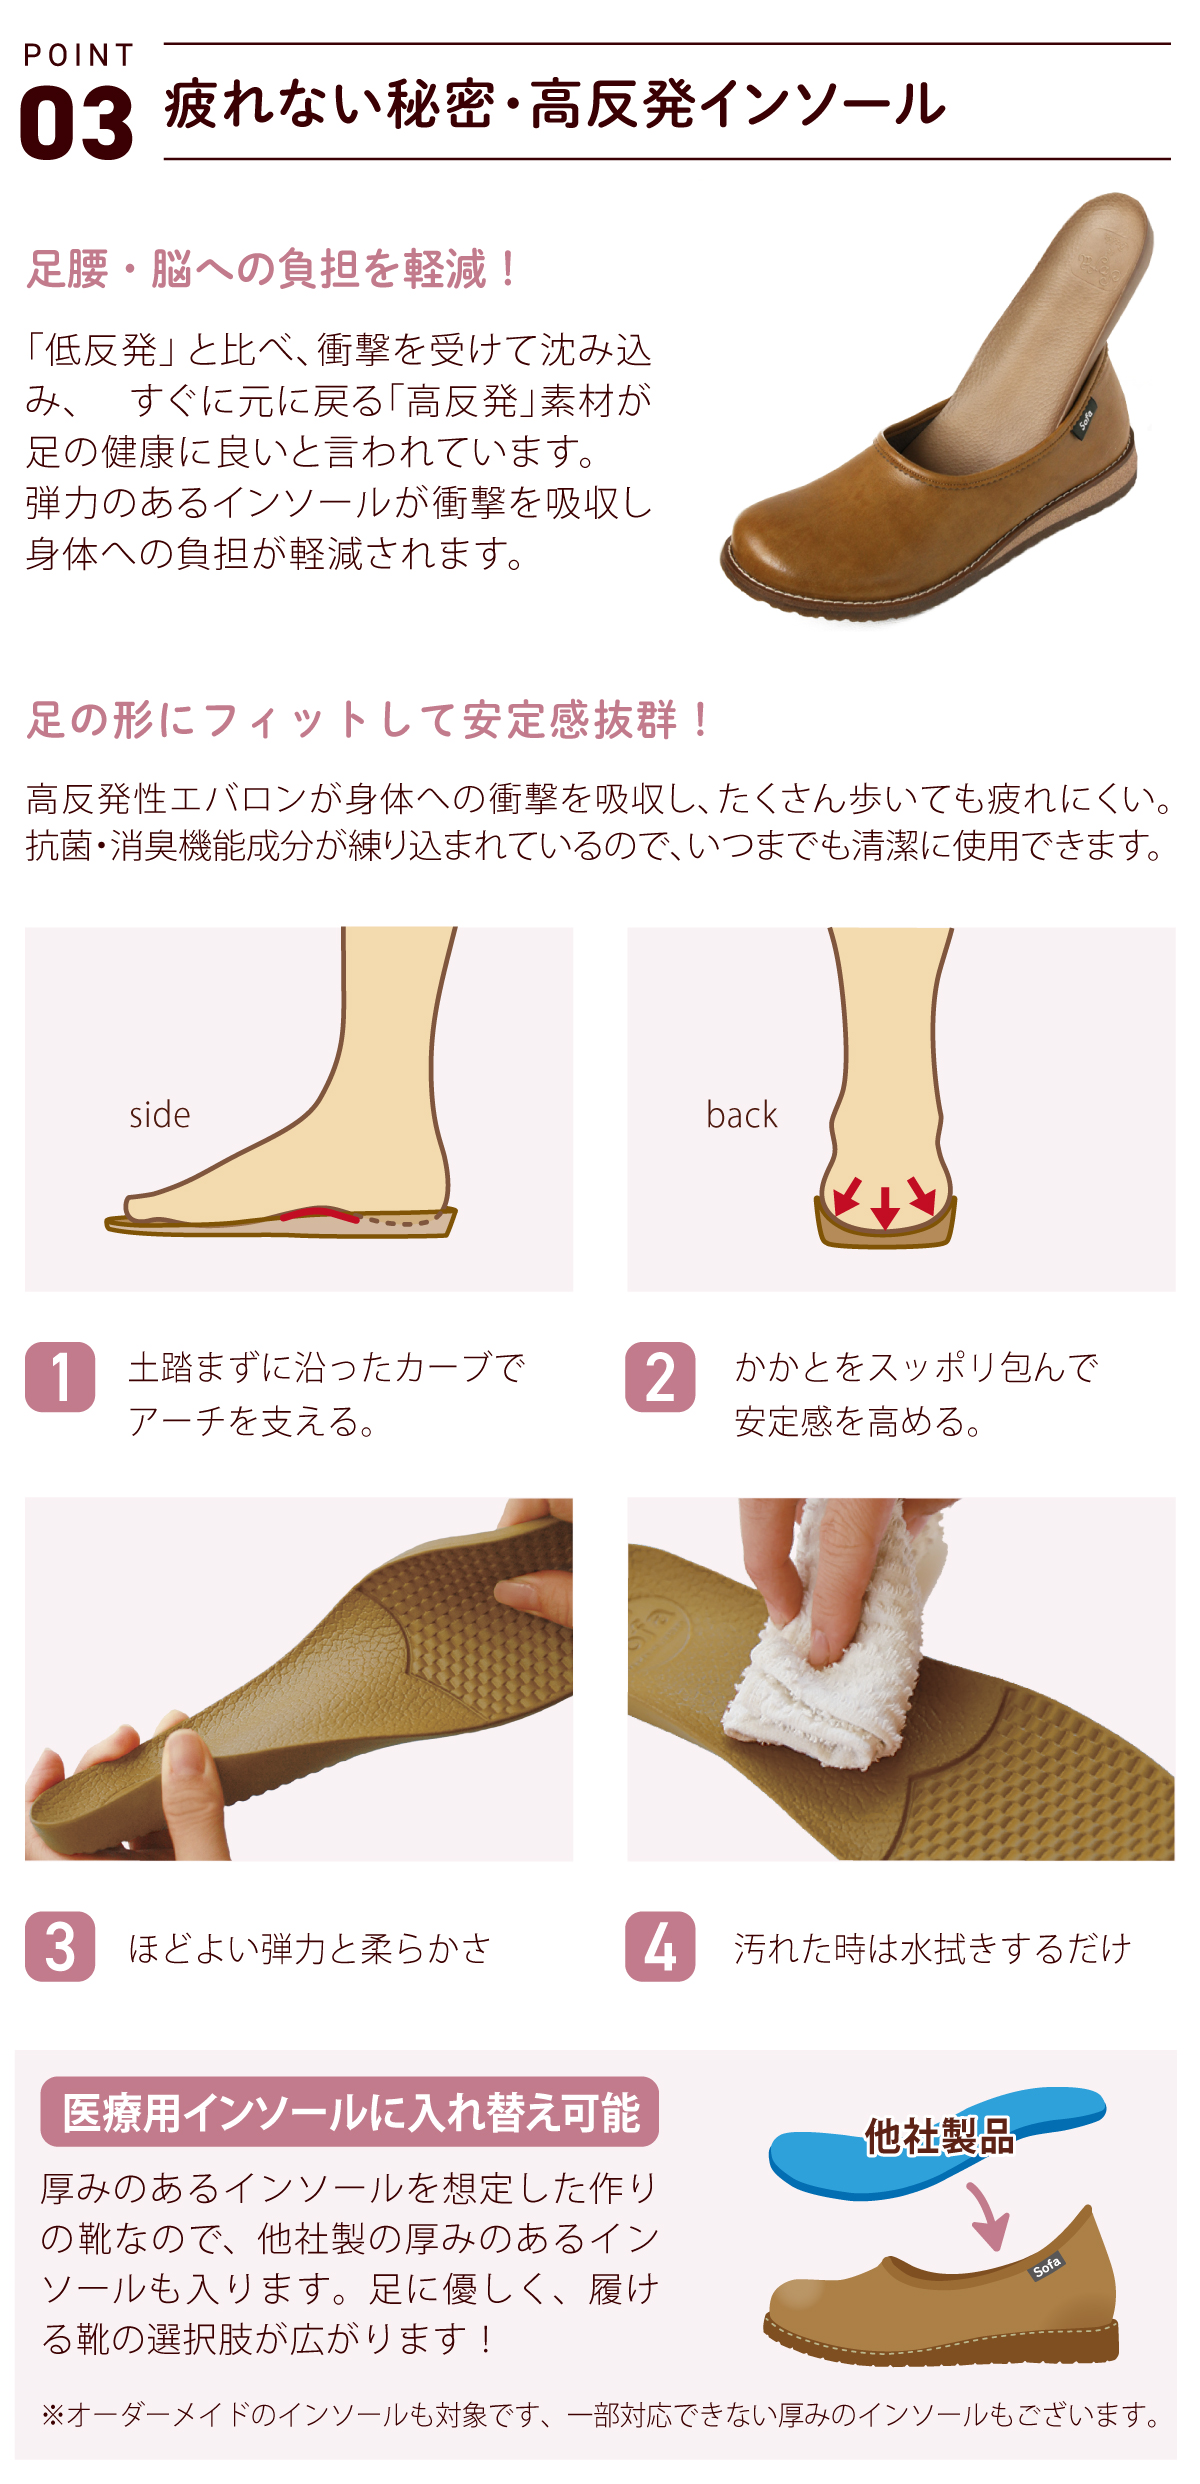 カジュアル パンプス バレエシューズ シンプル フラット 黒 婦人靴 日本製 ガーデン